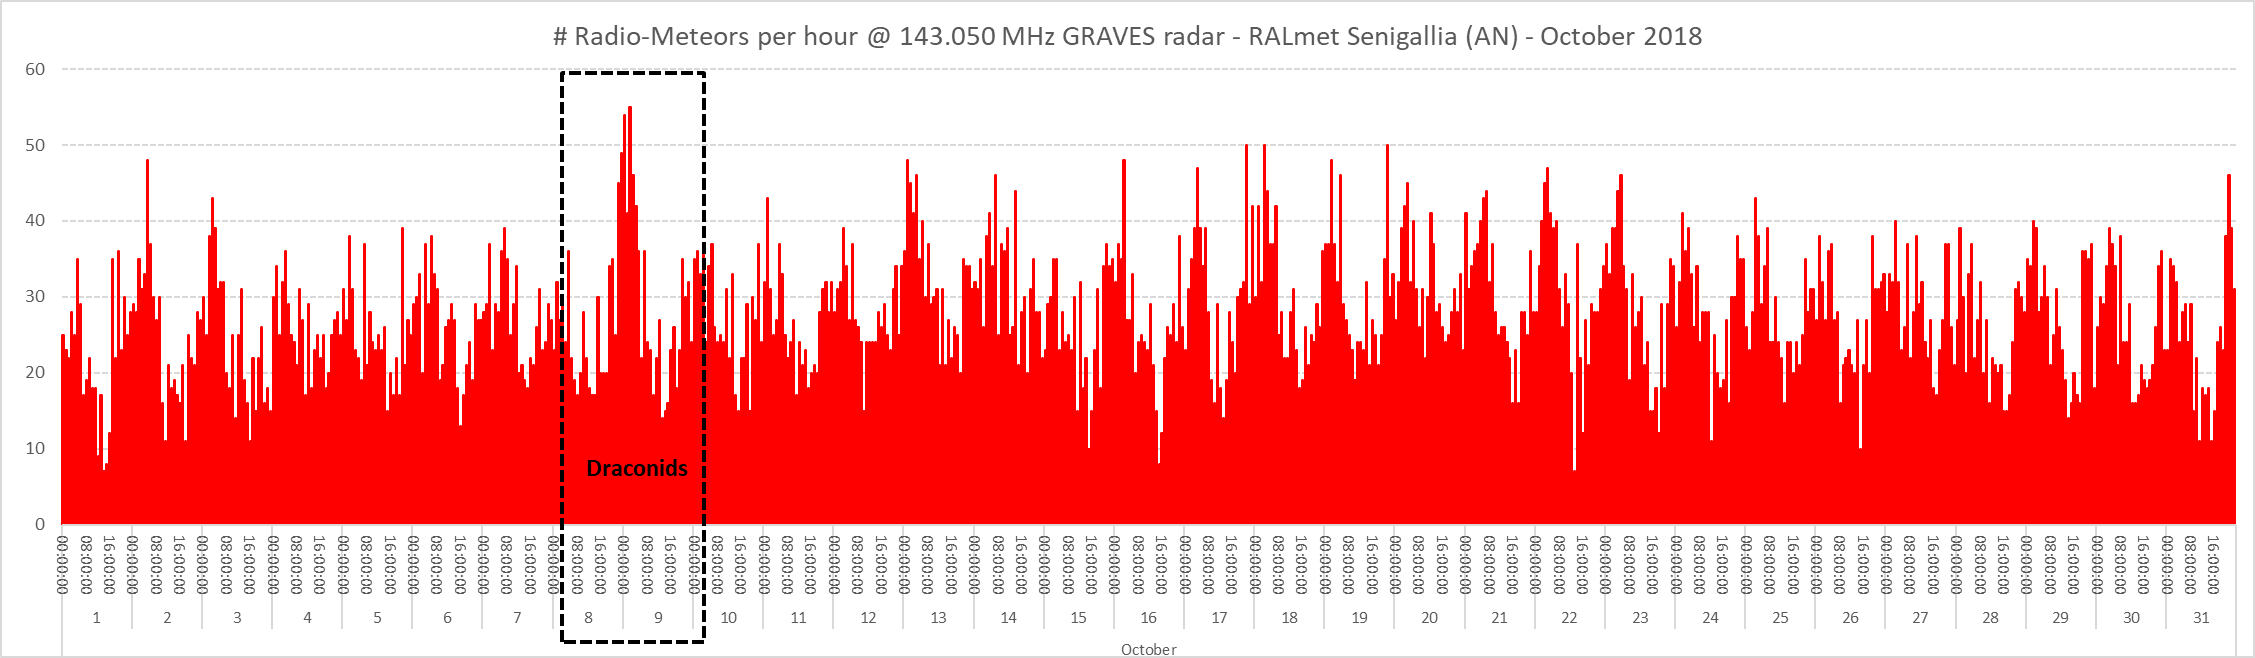 Conteggio del numero di radio-meteore per ora nel mese di Ottobre 2018.